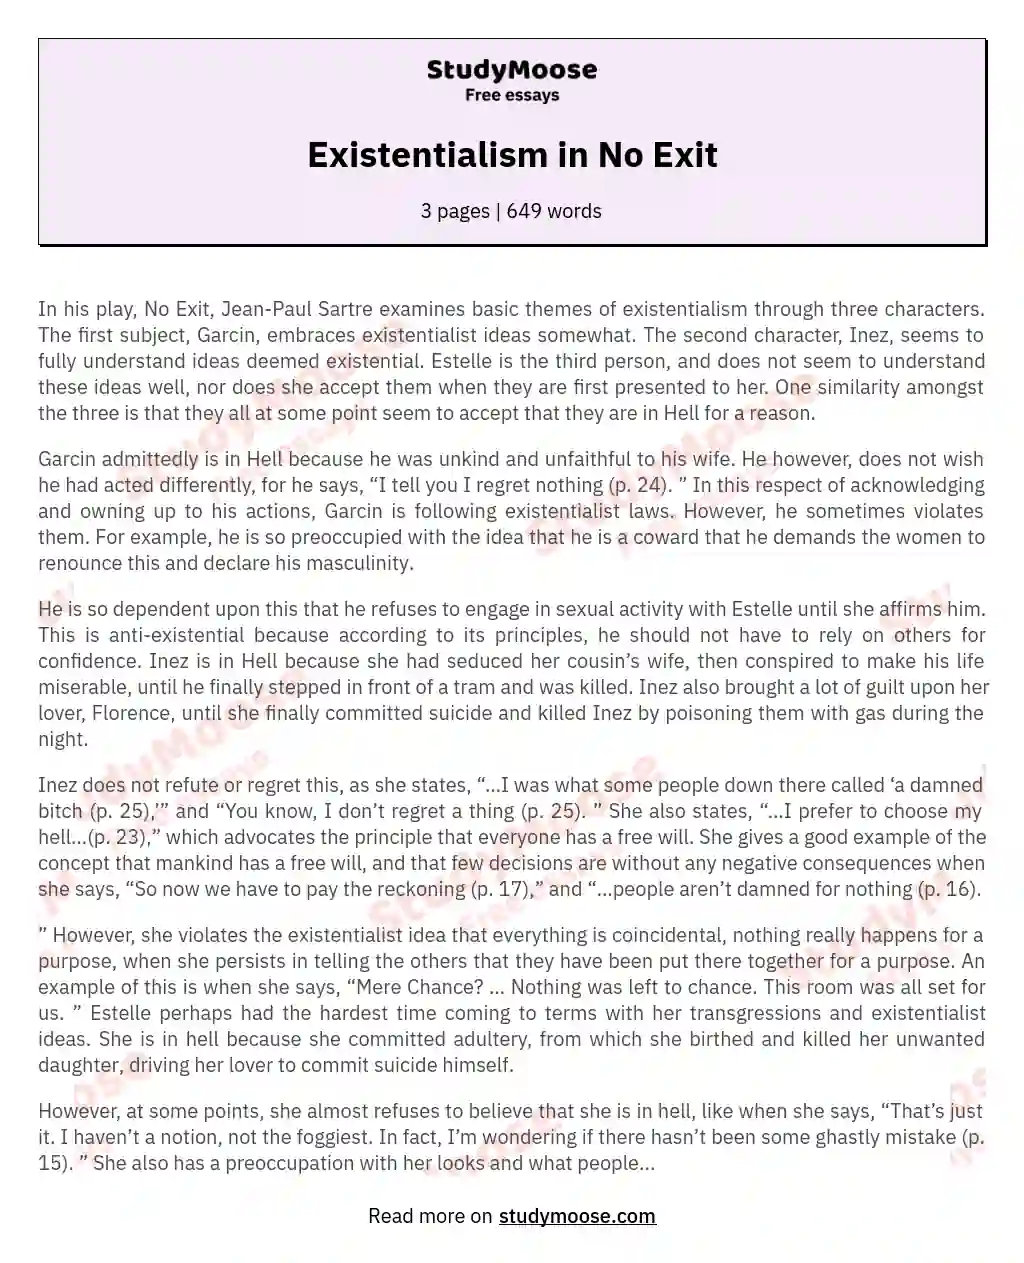 no exit existentialism